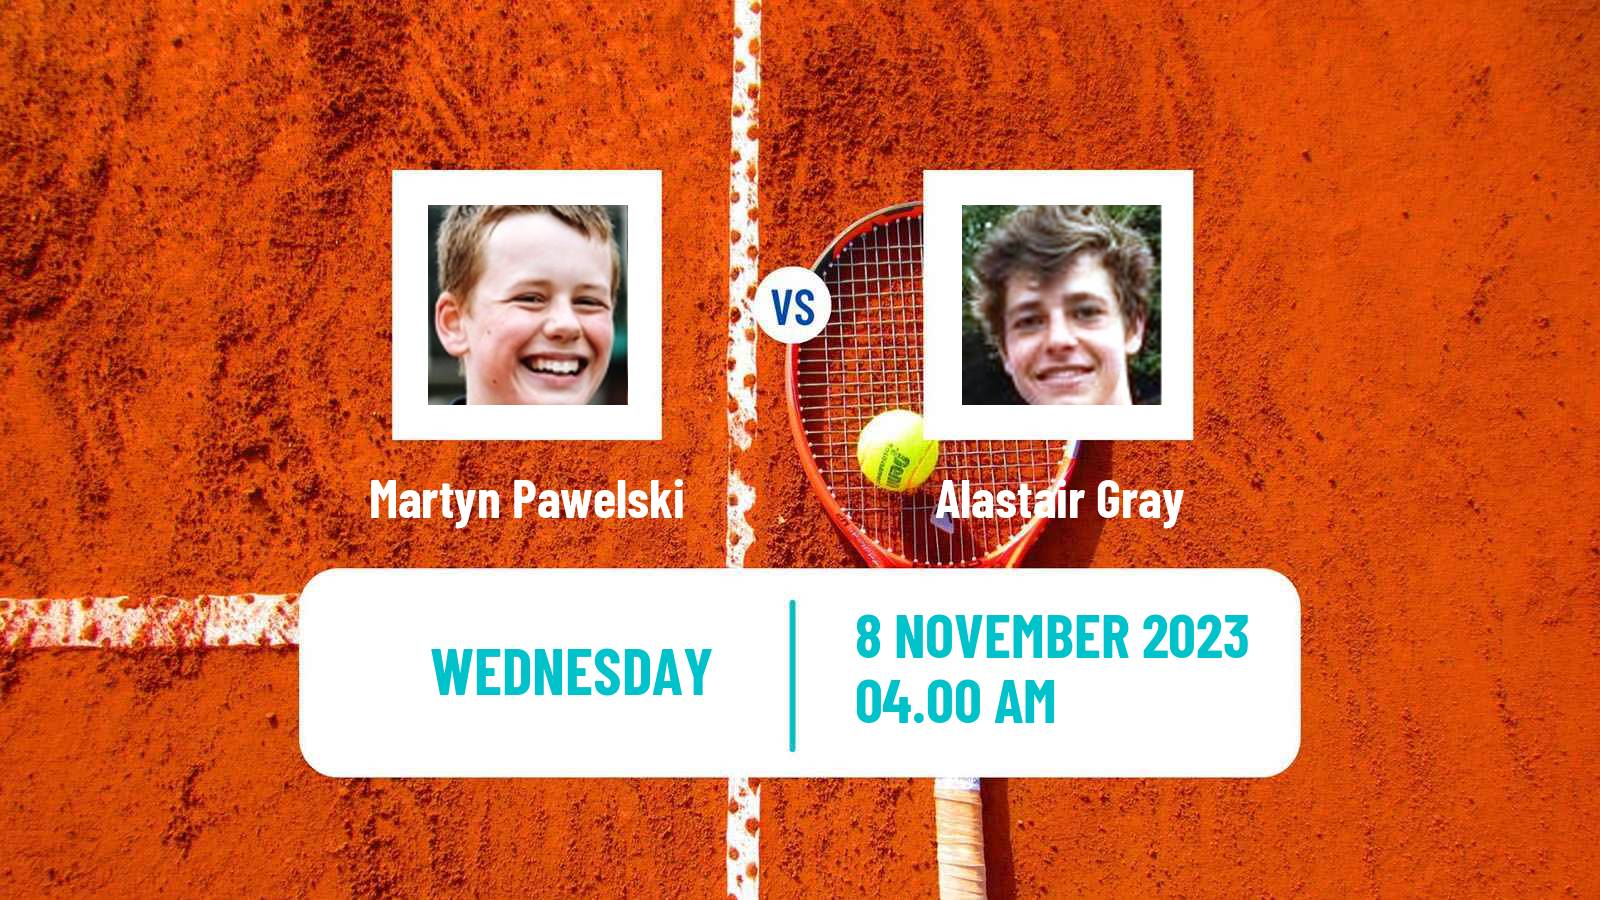 Tennis ITF M25 Trnava 2 Men Martyn Pawelski - Alastair Gray